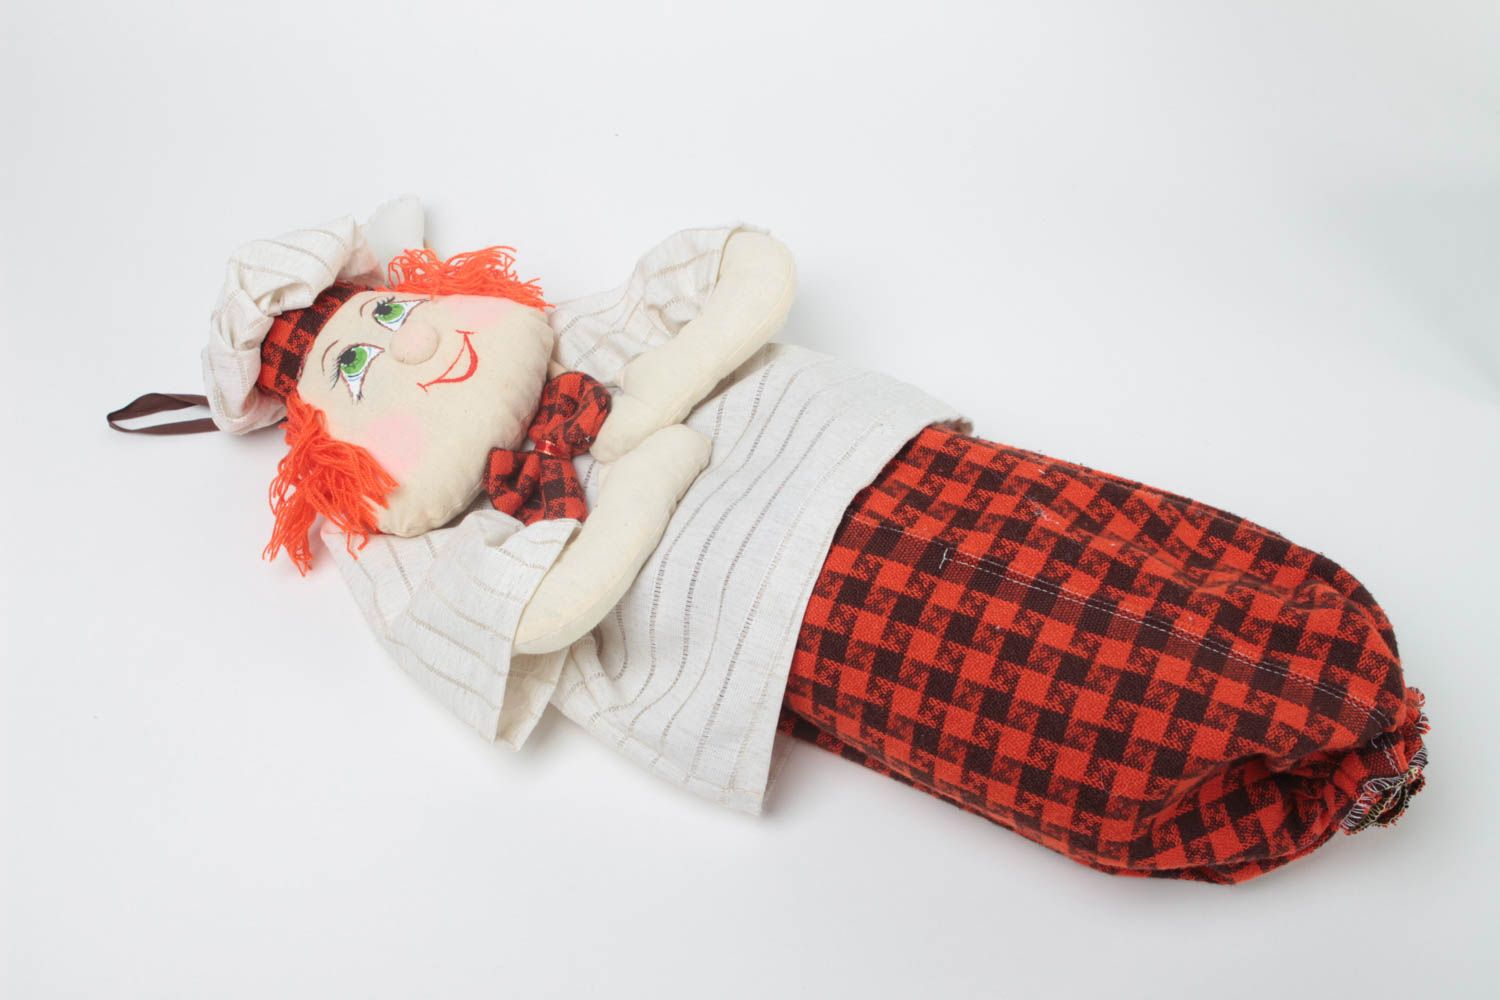 Забавная пакетница из ткани сшитая в виде куклы Повар для декора ручная работа фото 2